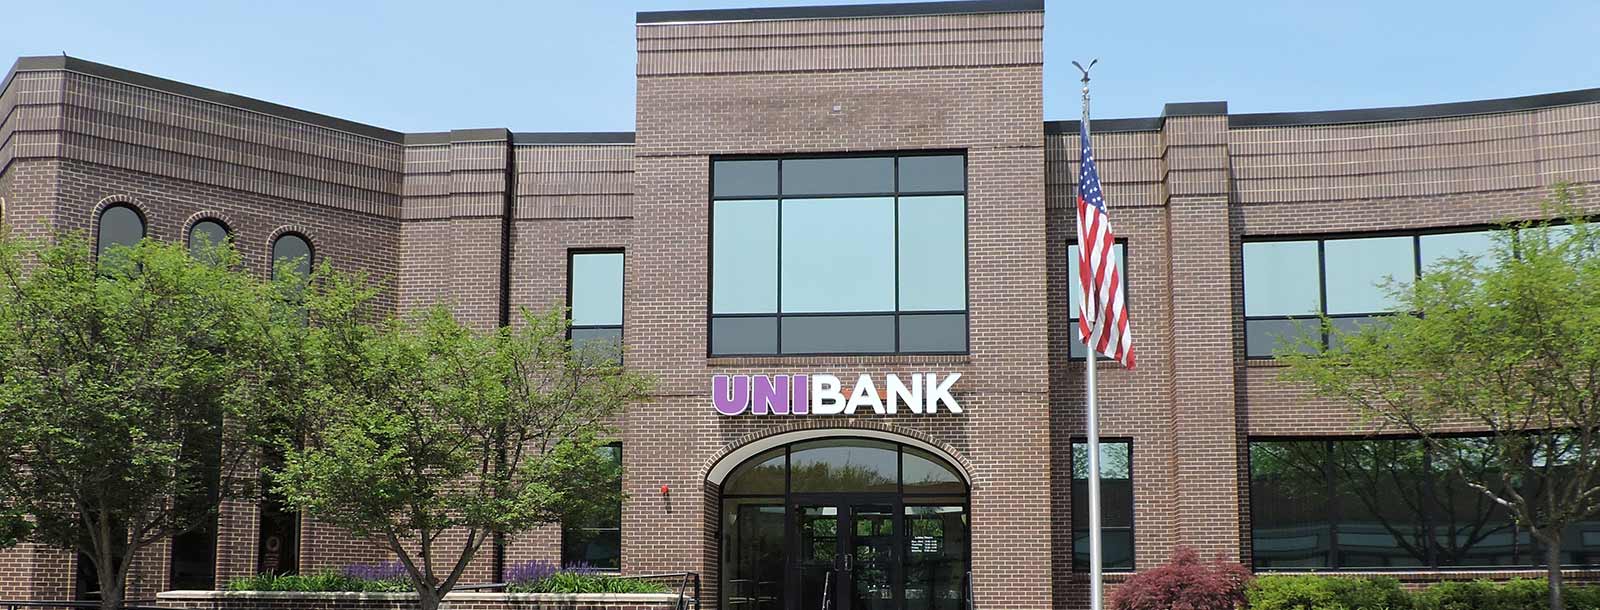 Uni Bank Building